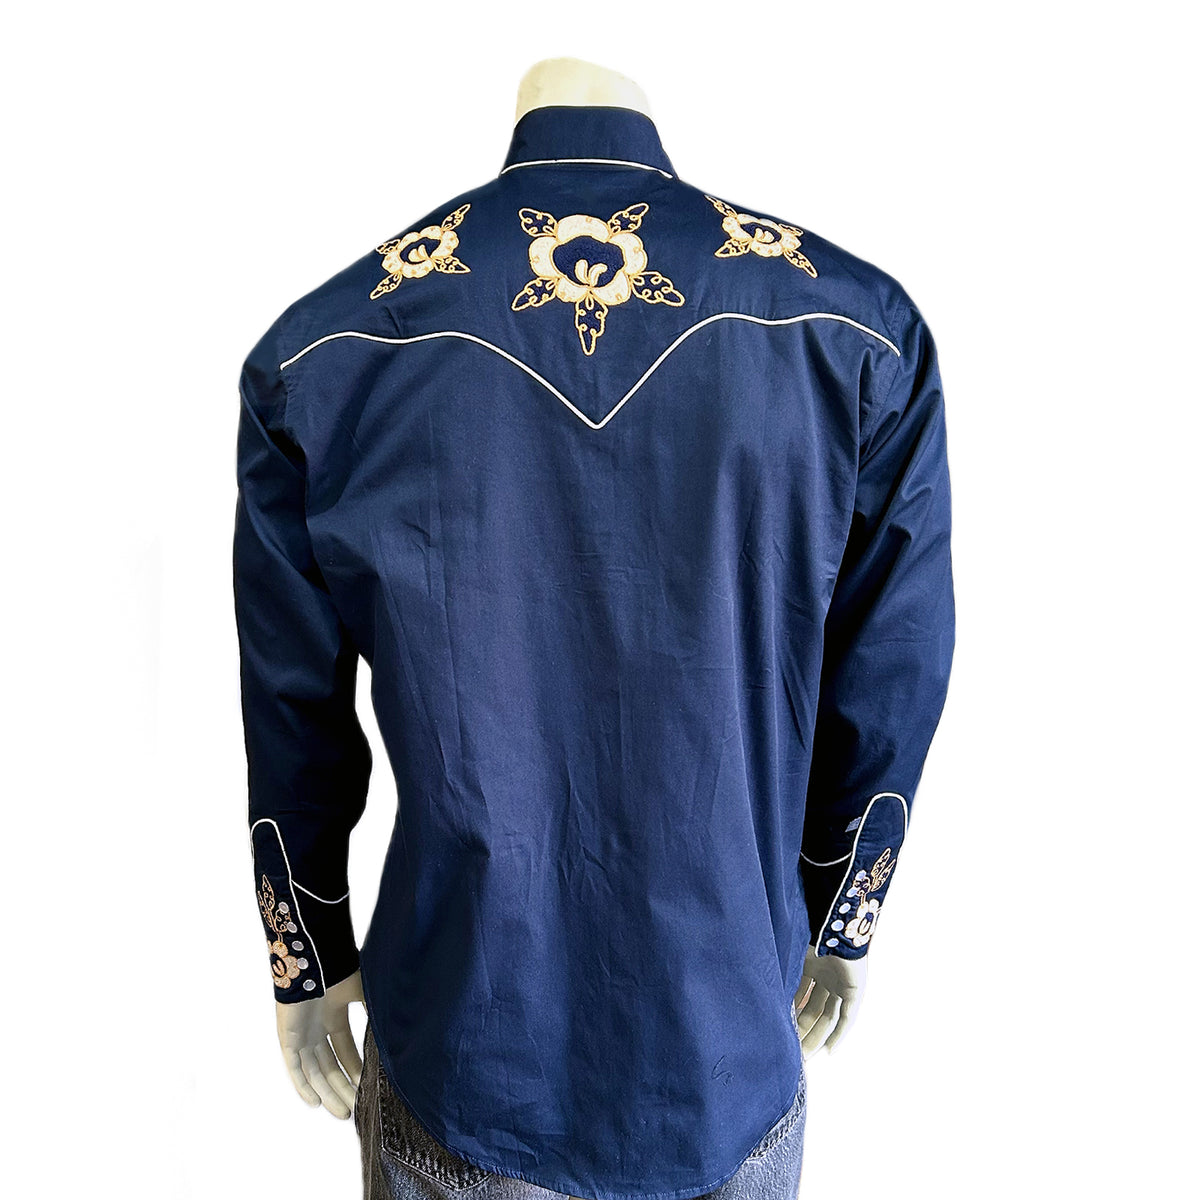 Men's Navy Vintage Floral Embroidered Western shirt